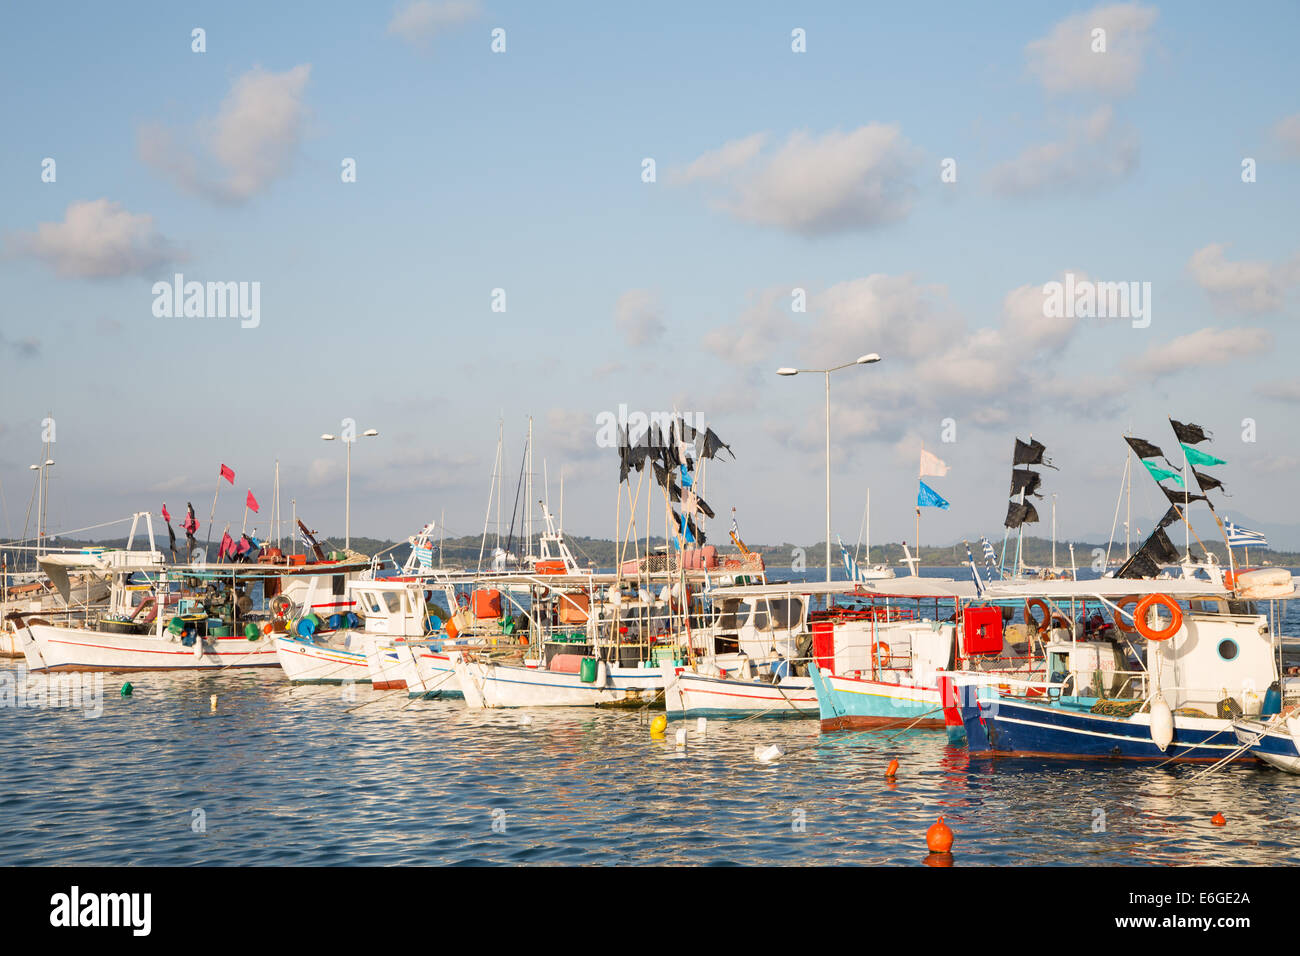 Sehenswürdigkeiten in Griechenland: traditionelle Fischerboote auf den griechischen Inseln in einem Hafen. Stockfoto